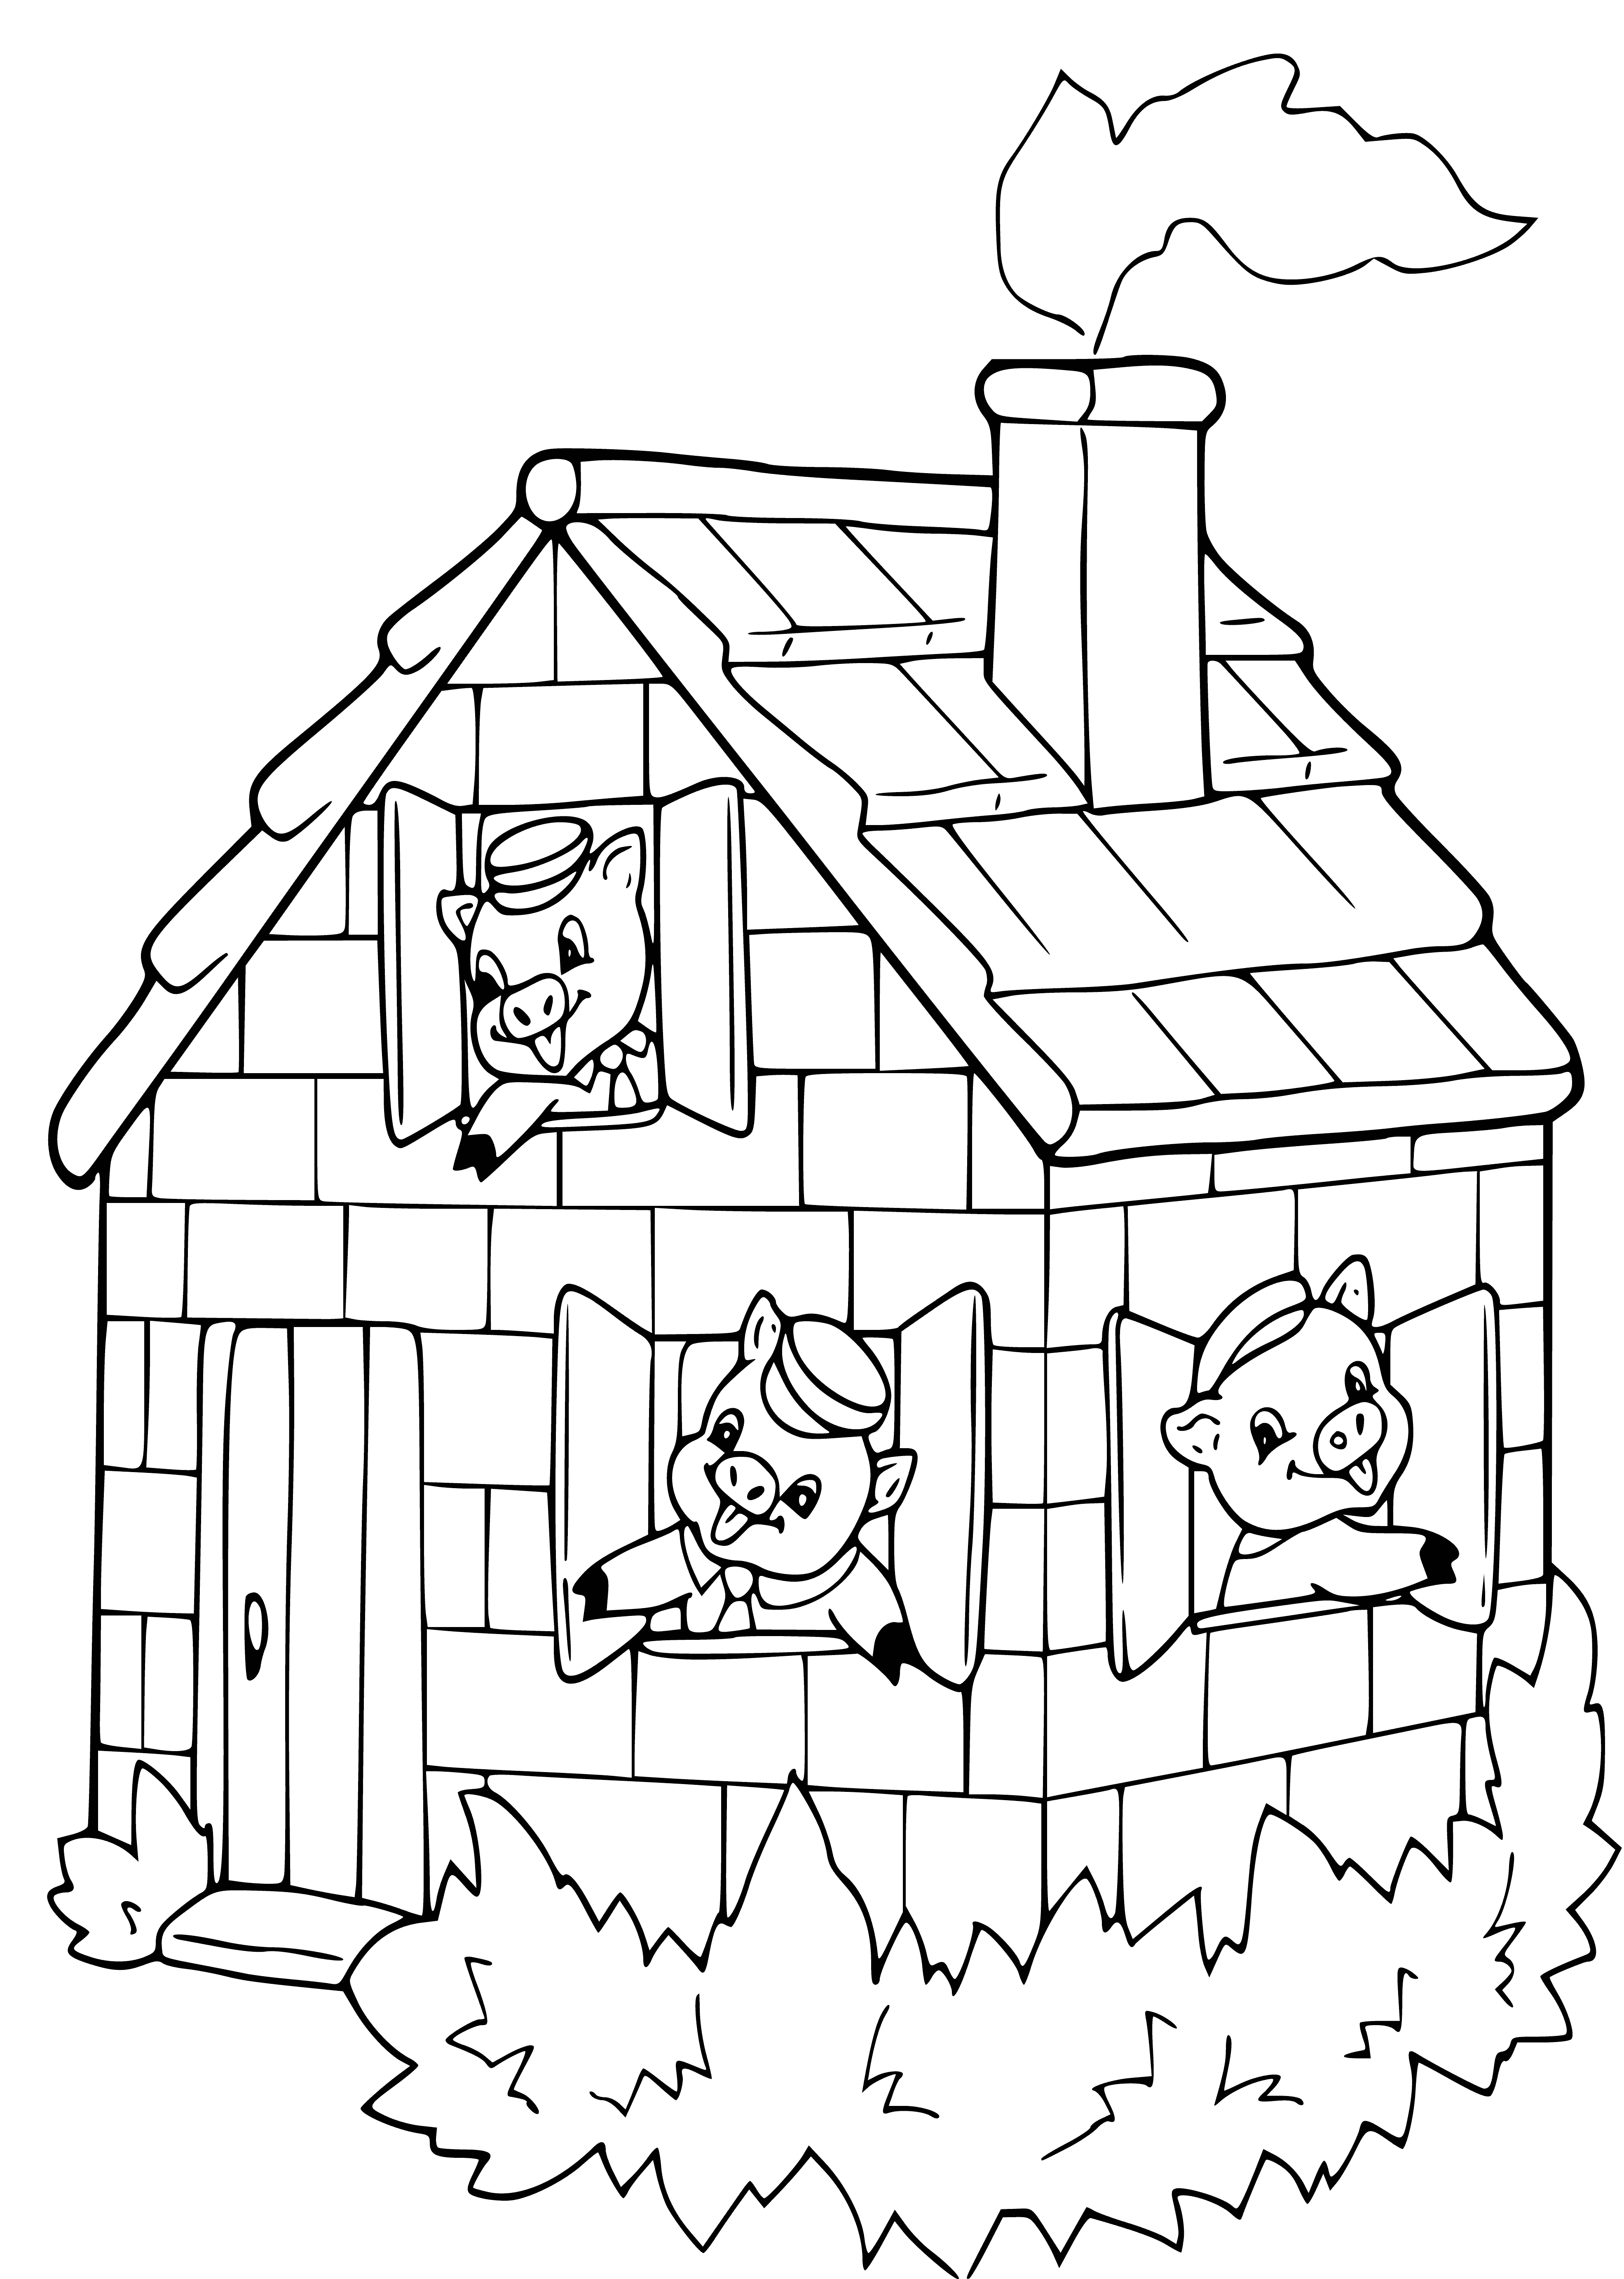 Üç küçük domuz büyük bir ev inşa etti boyama sayfası